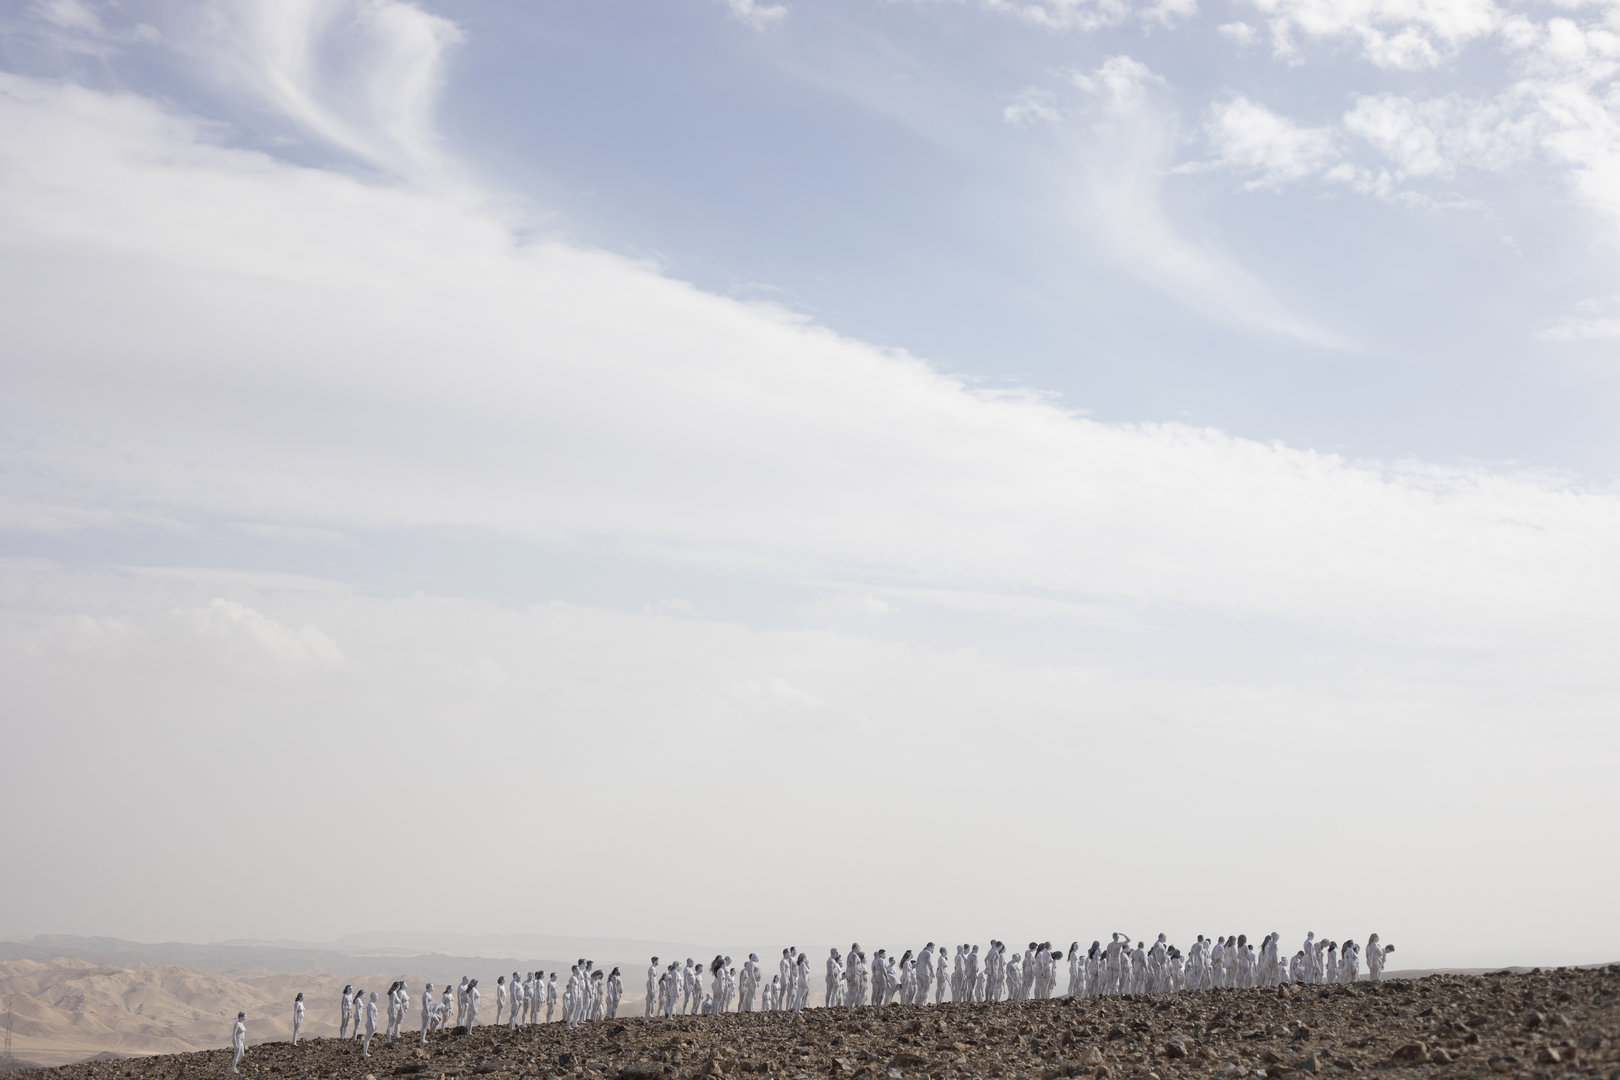 فنان يستعين بـ200 شخص لالتقاط صور عارية قرب البحر الميت (صورة)